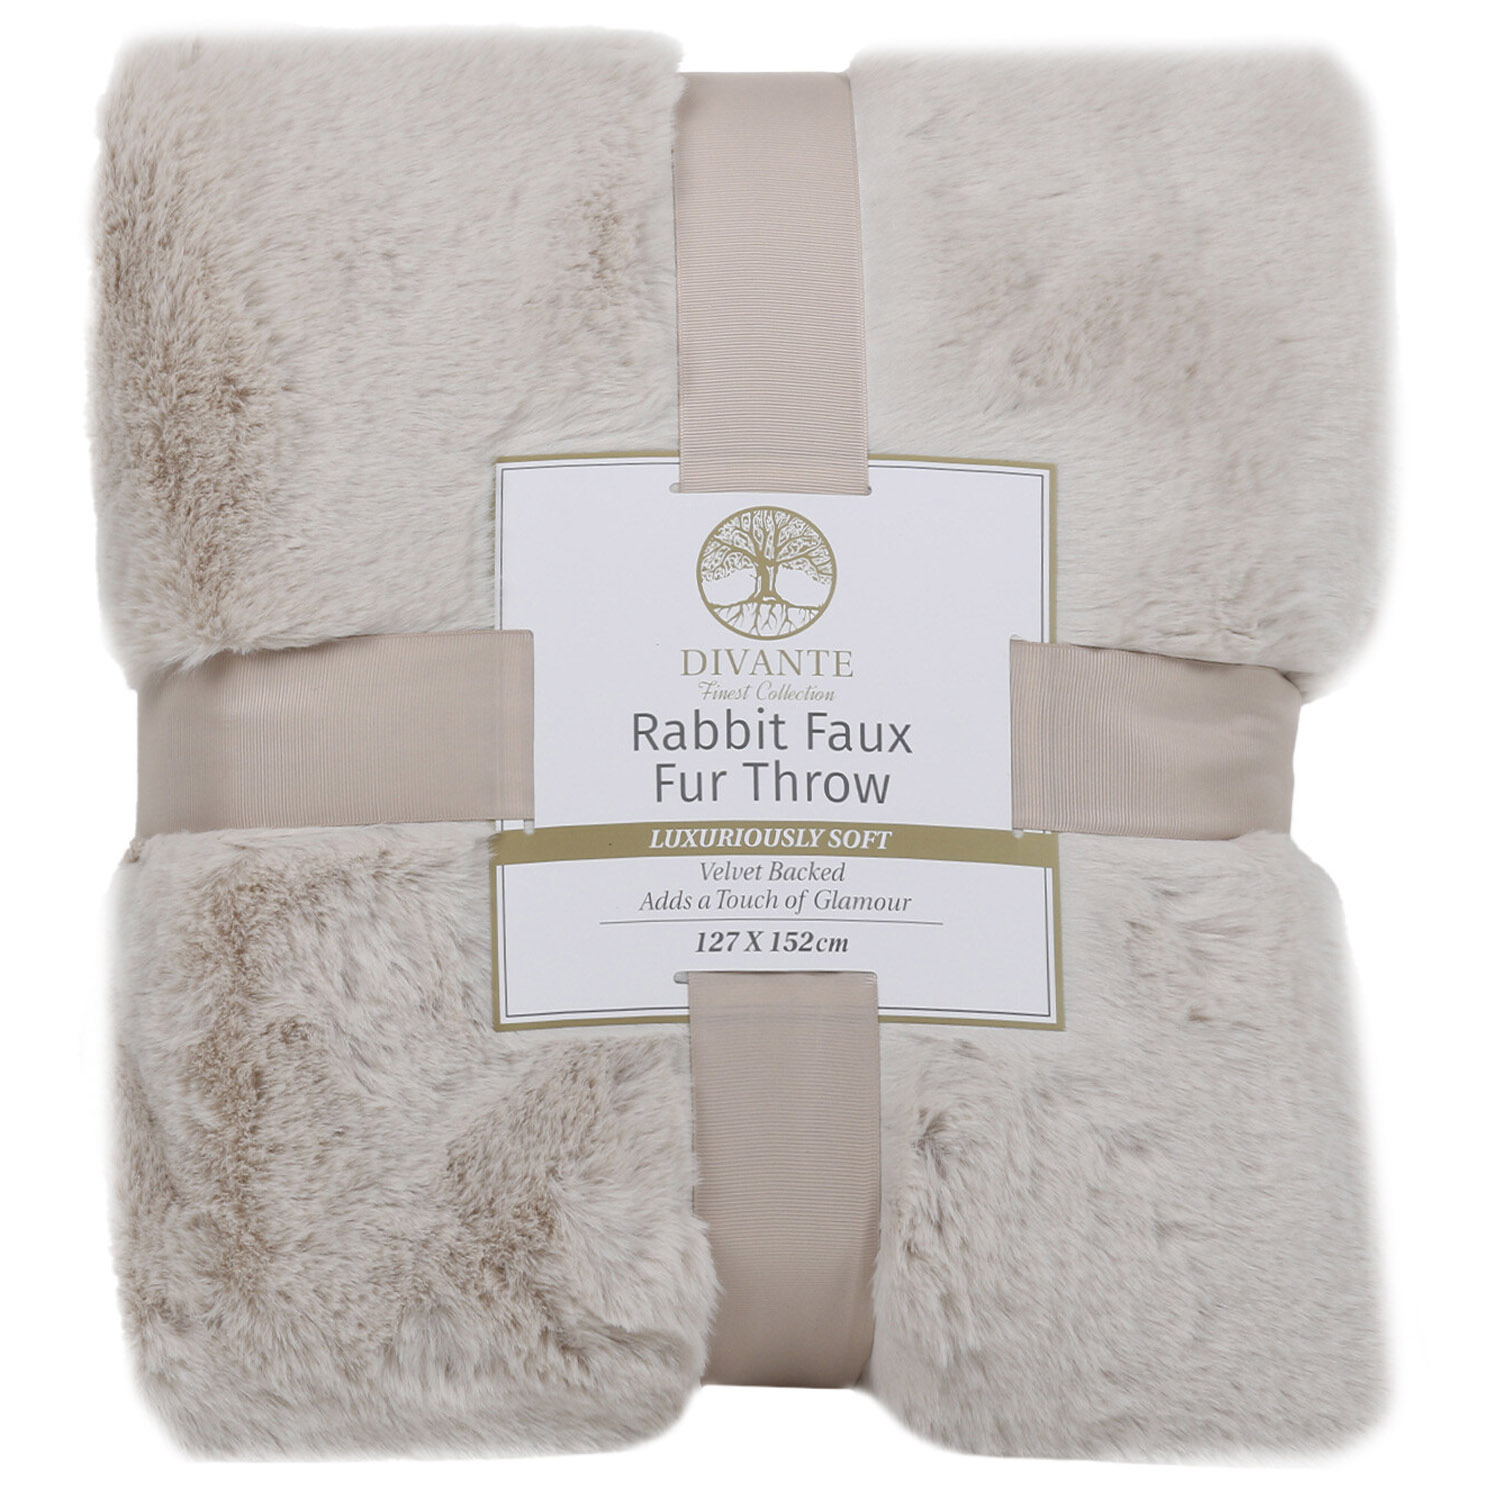 Divante Mink Rabbit Faux Fur Throw 127 x 152cm Image 1